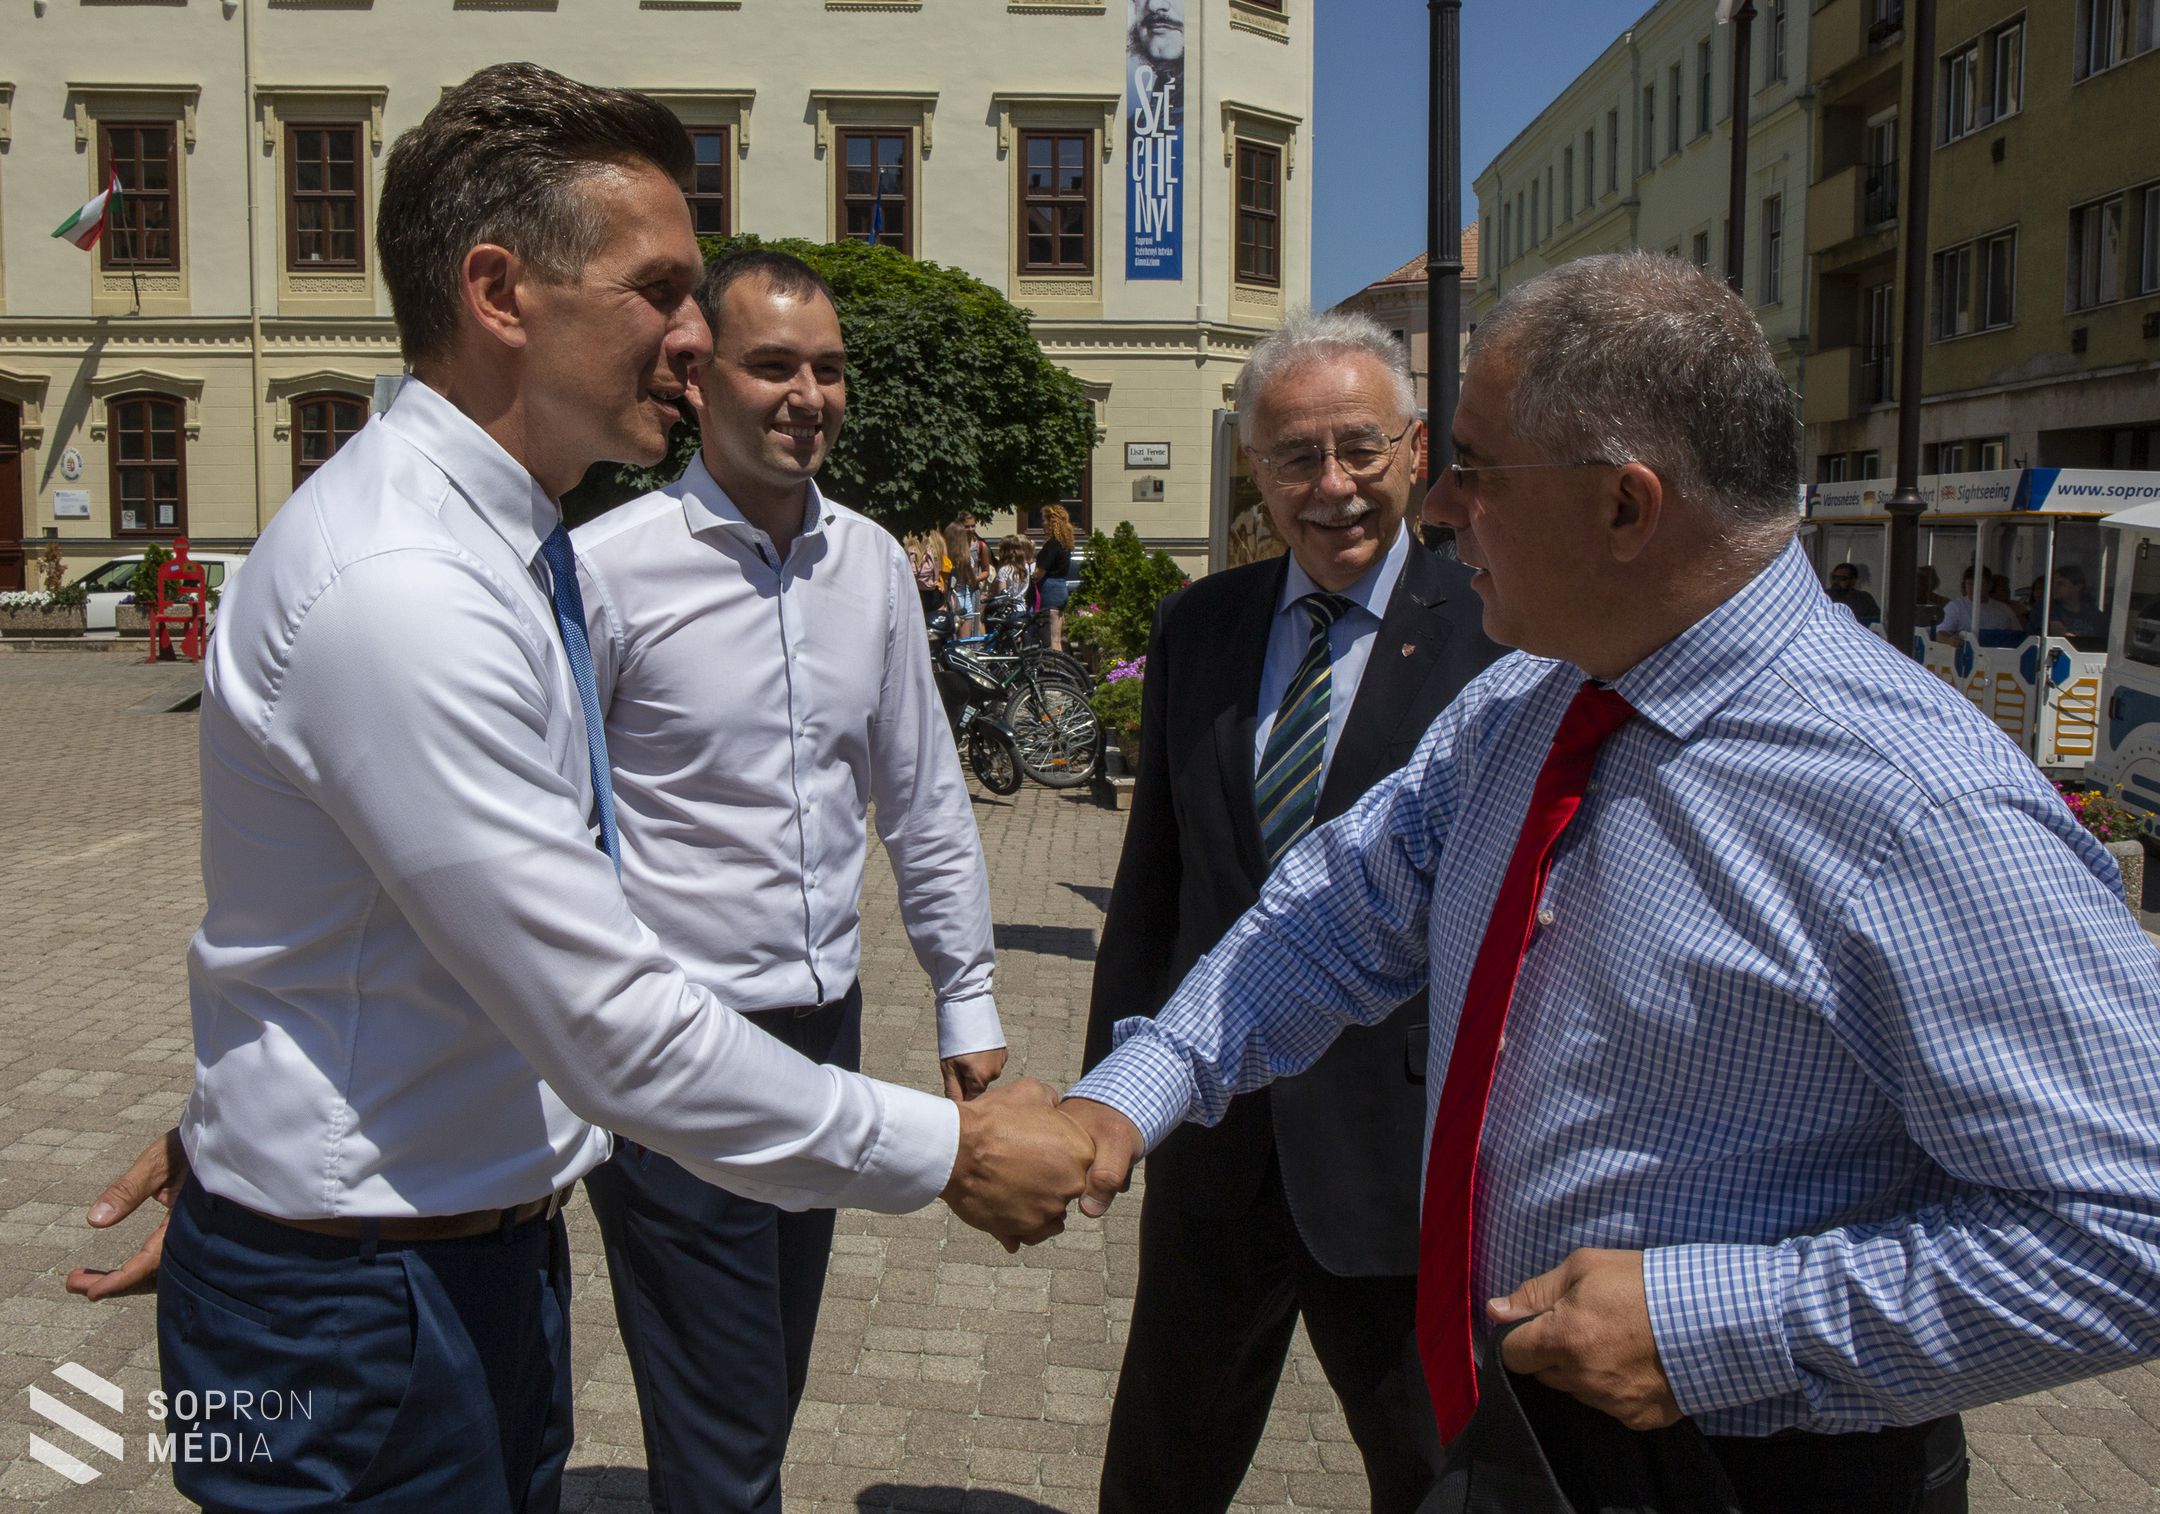 Farkas Ciprián a Fidesz-KDNP polgármesterjelöltje